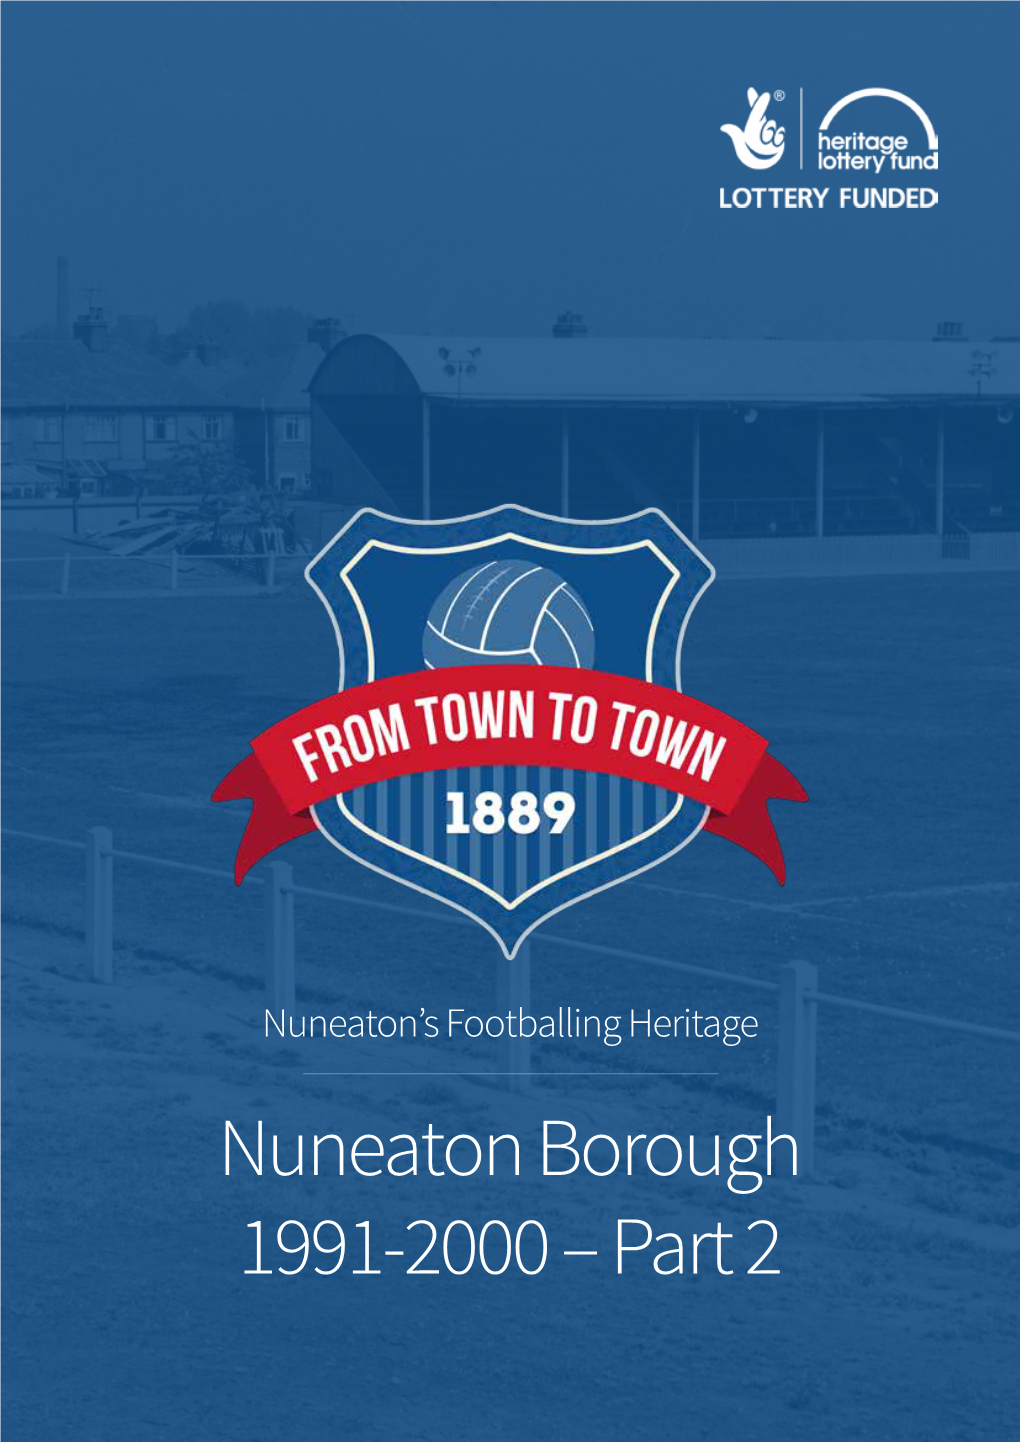 Nuneaton Borough 1991-2000 – Part 2 Contents